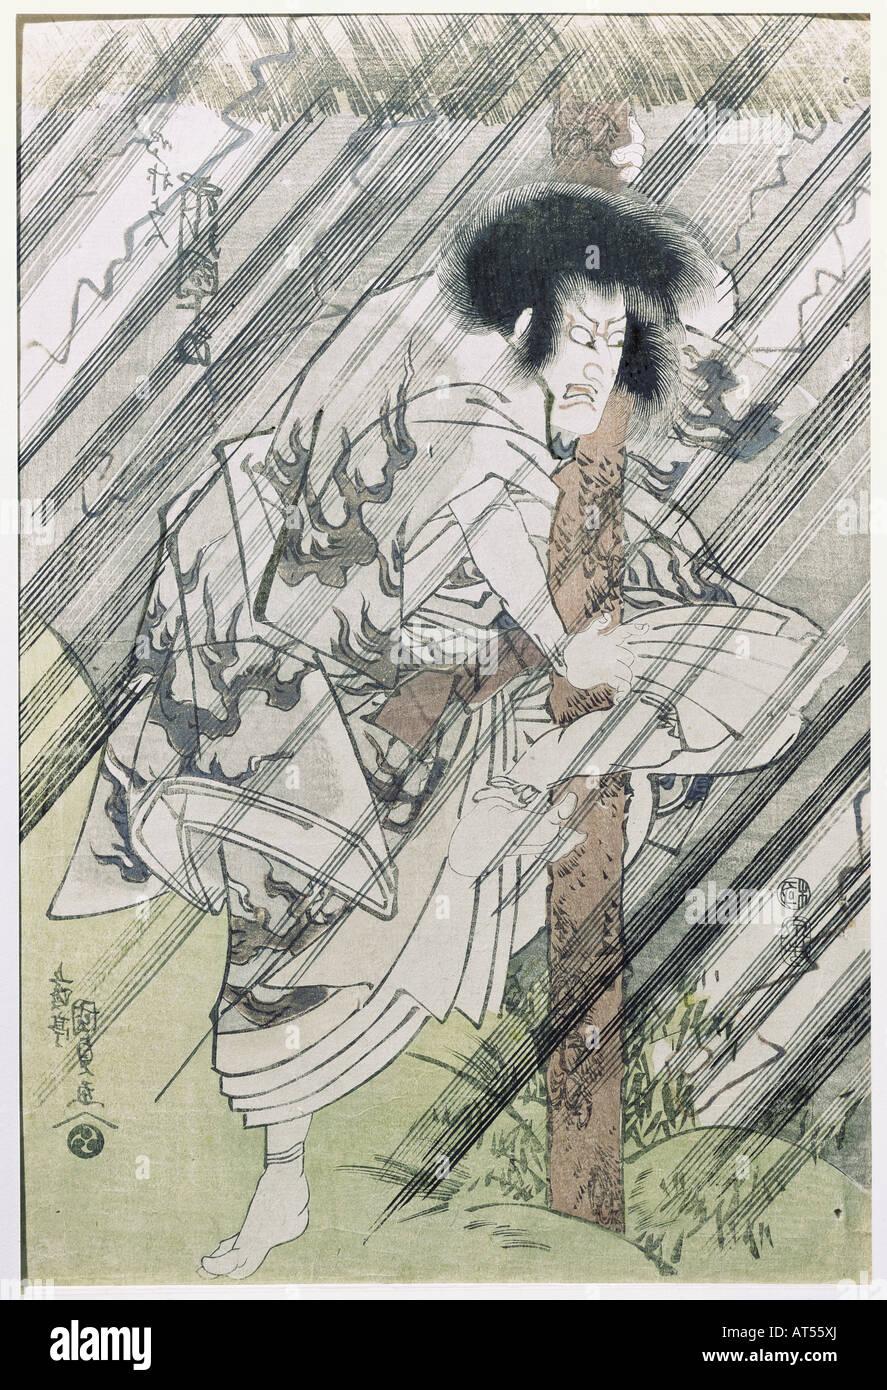 Bildende Kunst, Kunisada, GOTOTEI I, (1785-1865), Tokoyuni III. aus dem Jahre 1844, "Der Schauspieler Idukawa Danjuro VII. als Shirobei in einem Gewitter (Szene aus dem Spiel Edo no hana wakayagi Soga)', farbige Holzschnitt, Japan, ca. 1818, F. Winzinger Sammlung, Regensburg, Artist's Urheberrecht nicht geklärt zu werden. Stockfoto